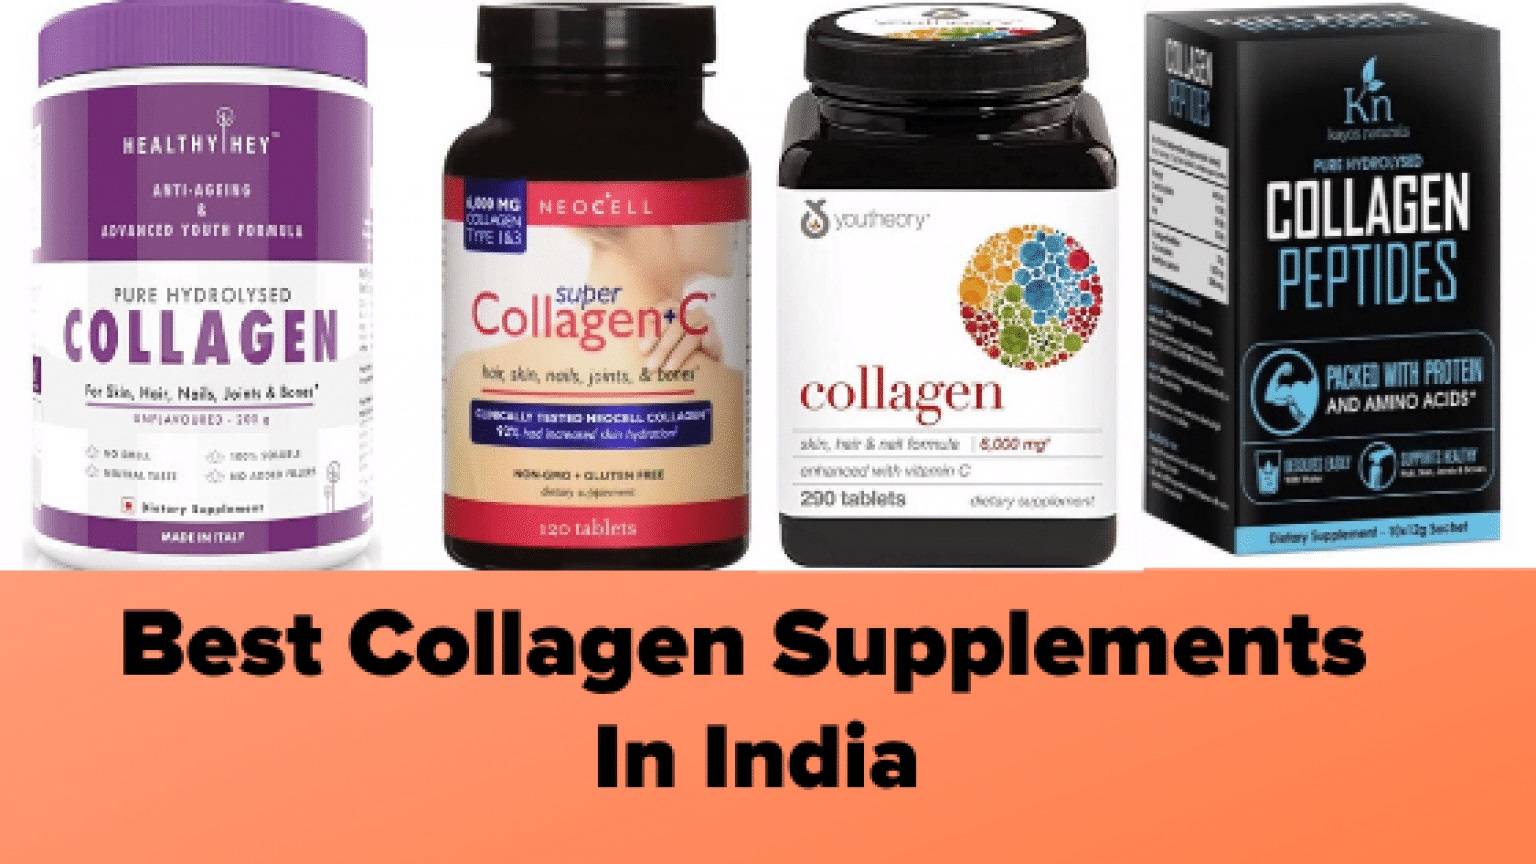 Benefits of Collagen Supplements